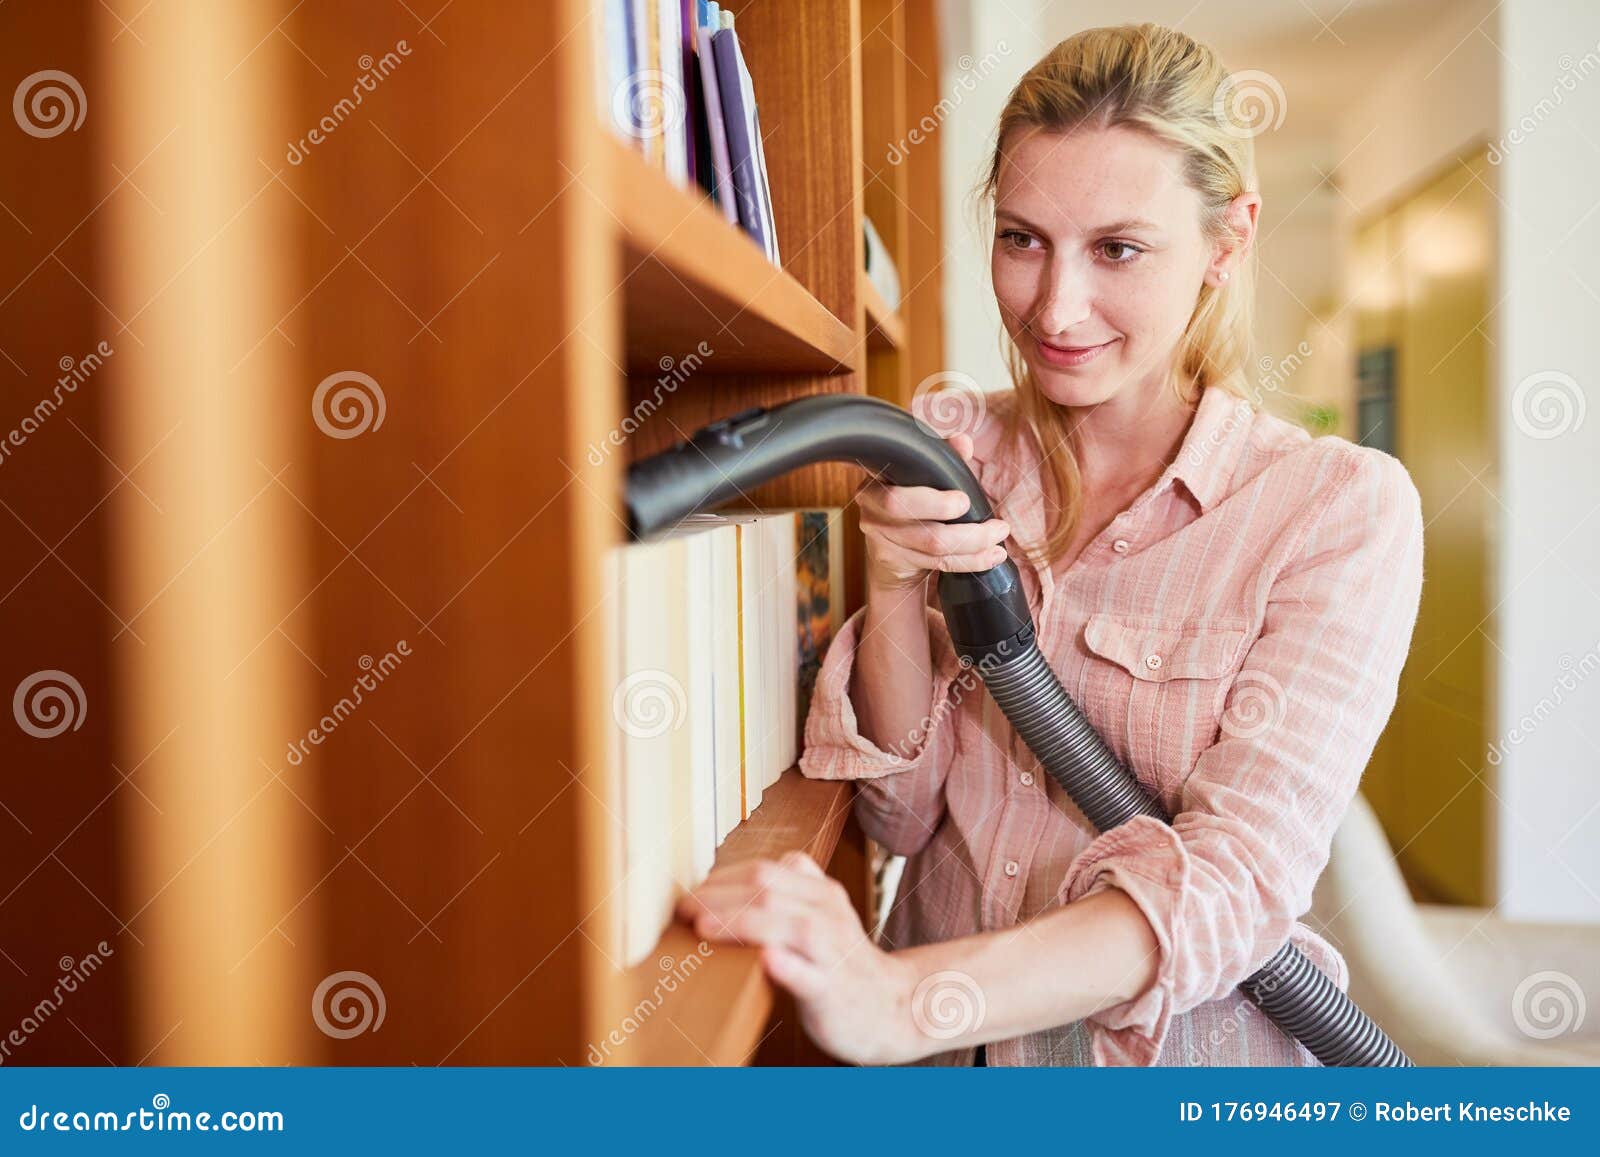 Cleaning Lady Dusting Bookshelf Stock Image Image Of Shelf Lady